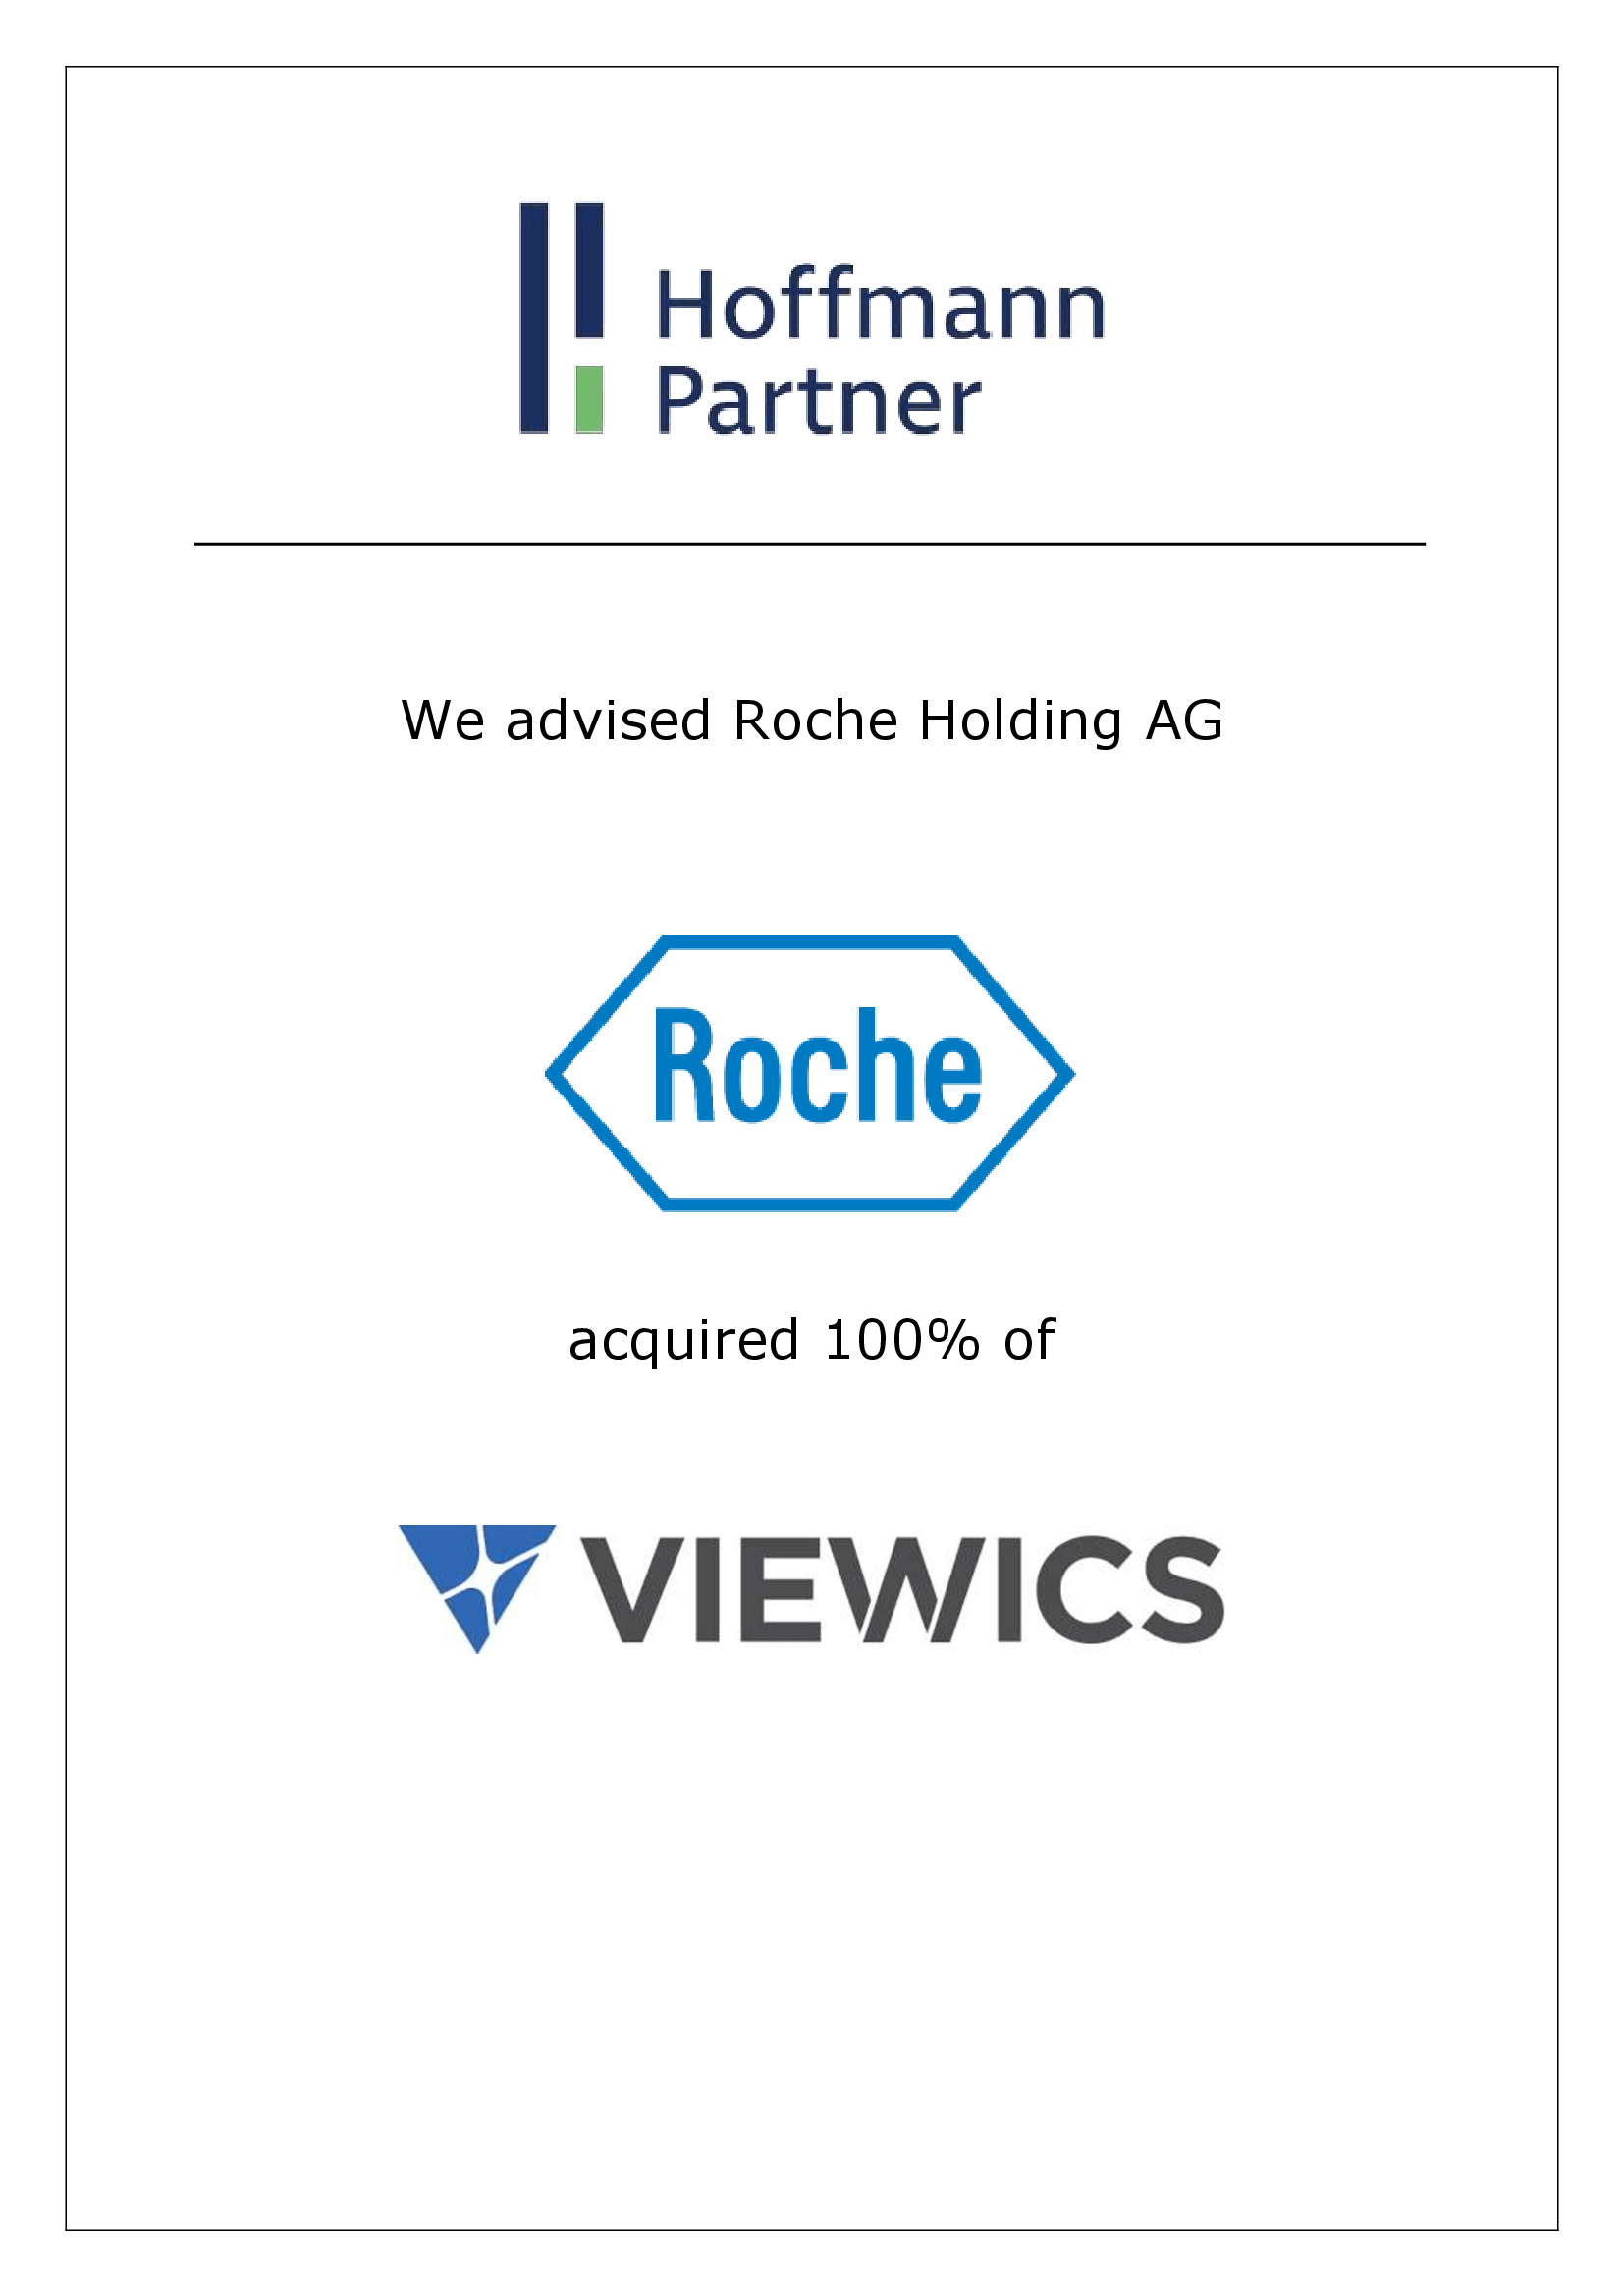 Roche - Viewics